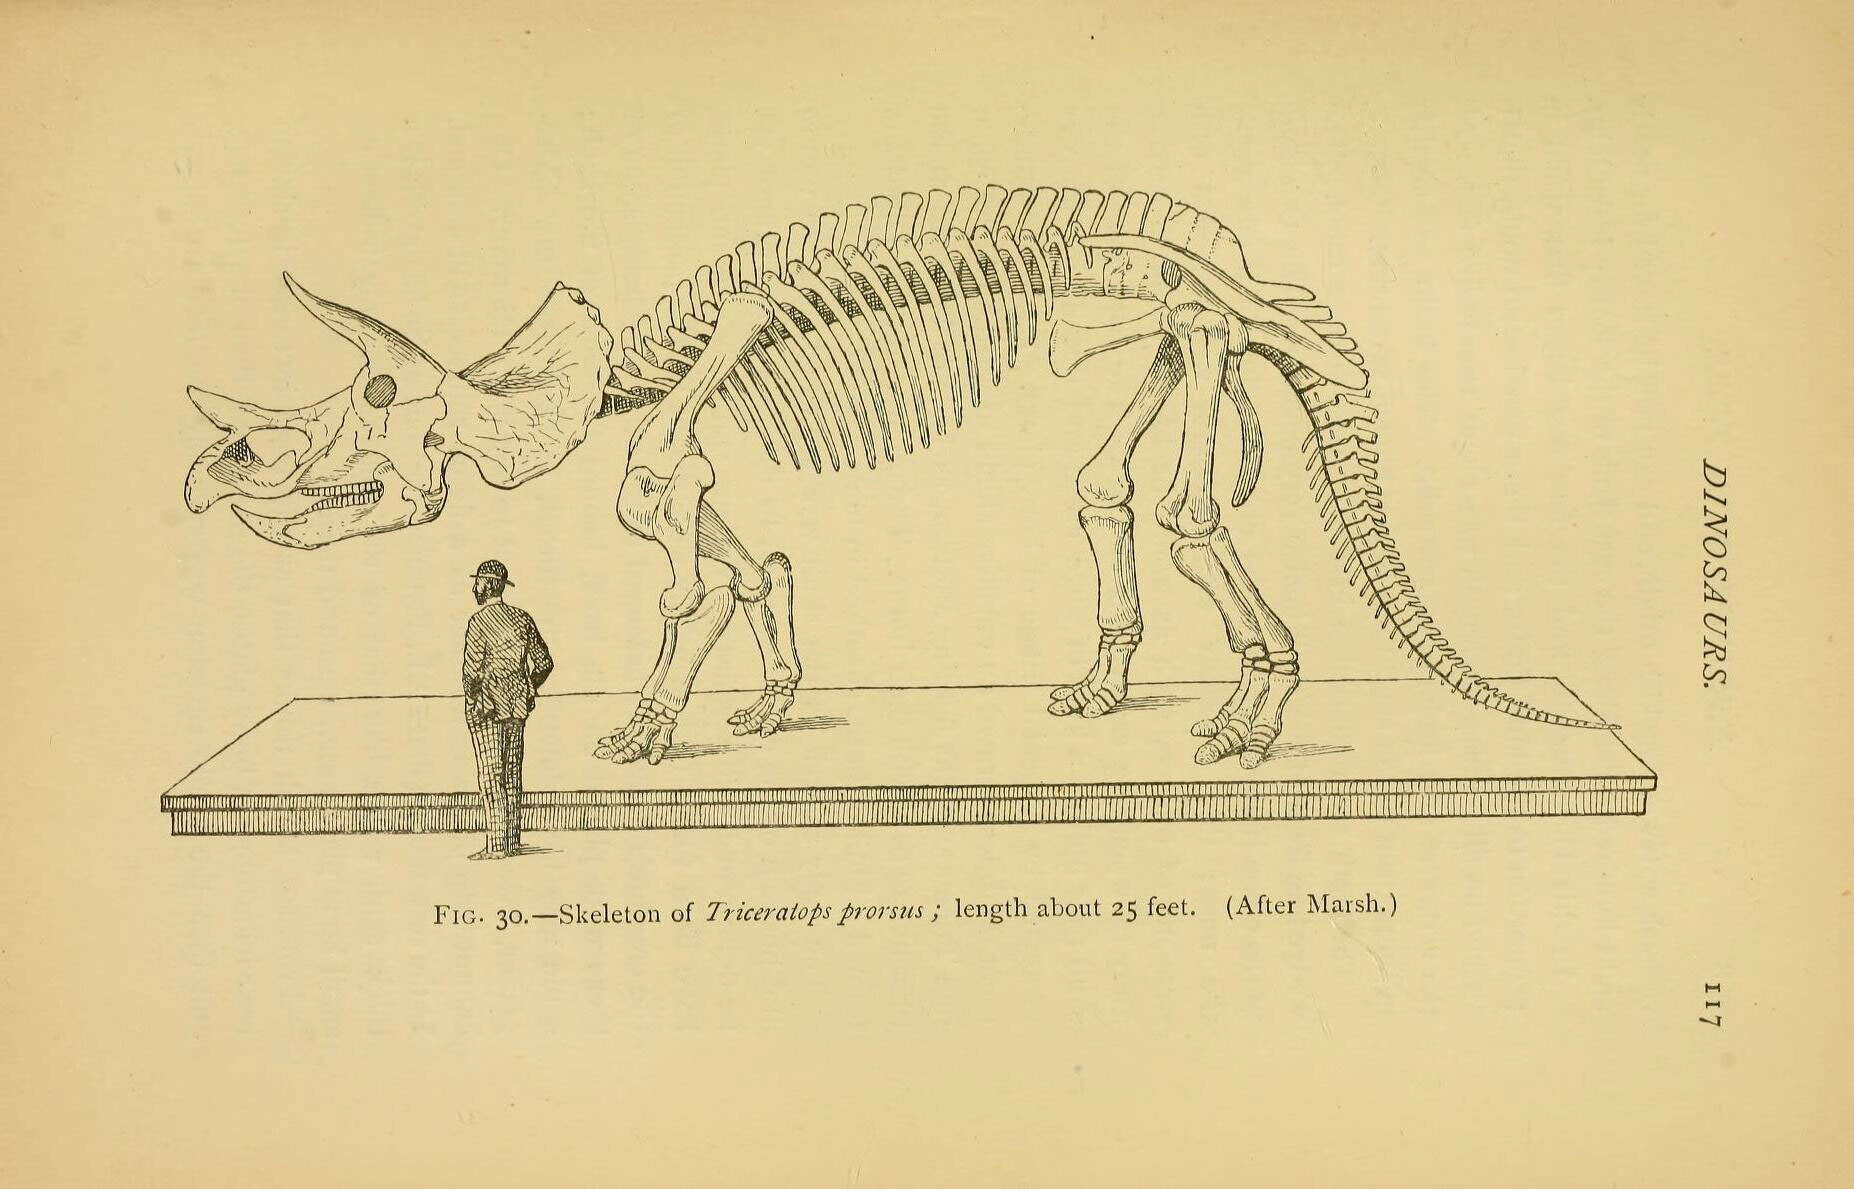 Image of ornithischian